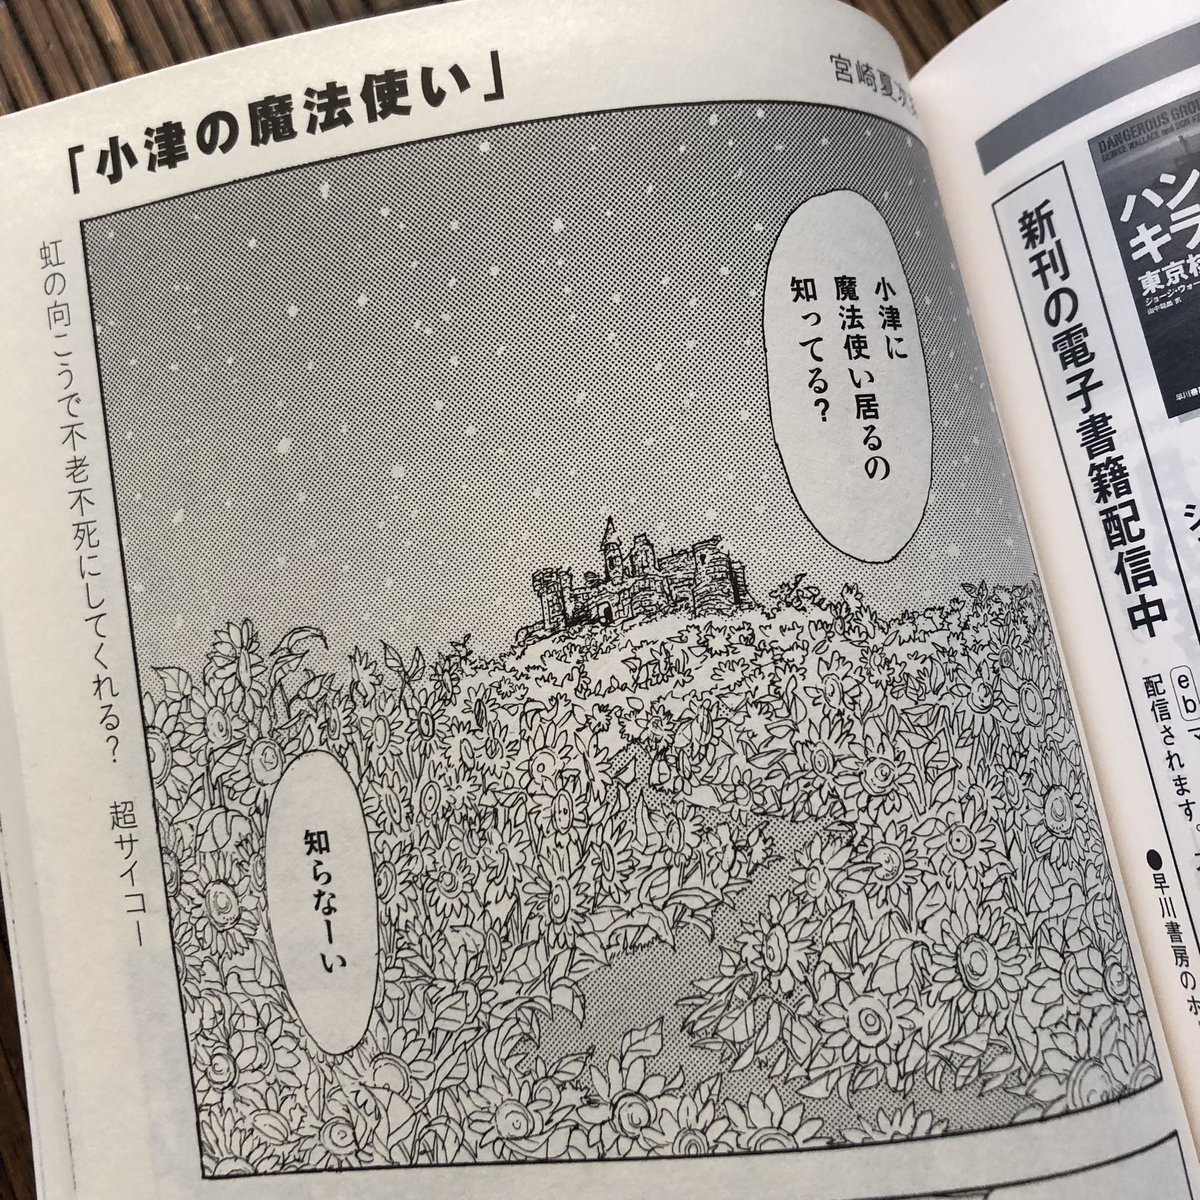 発売中の『SFマガジン』12号に、宮崎夏次系先生の最新ショート読み切りが掲載されています。タイトルは『小津の魔法使い』。 